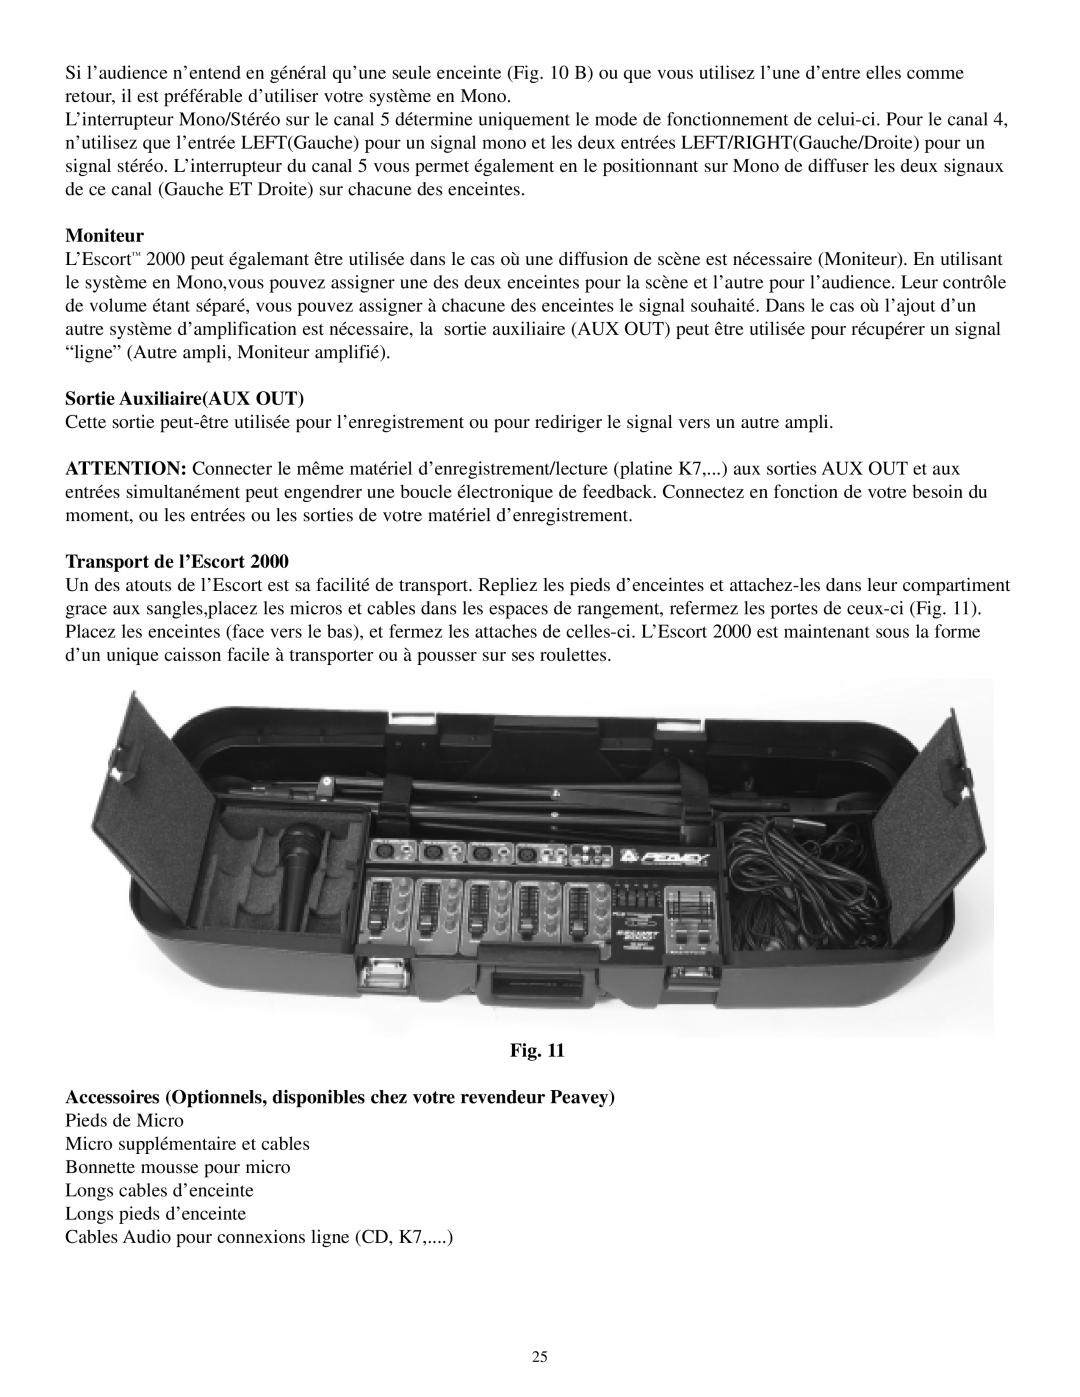 Musica 2000 manual Sortie AuxiliaireAUX OUT, Transport de l’Escort, L’Escort, Moniteur 